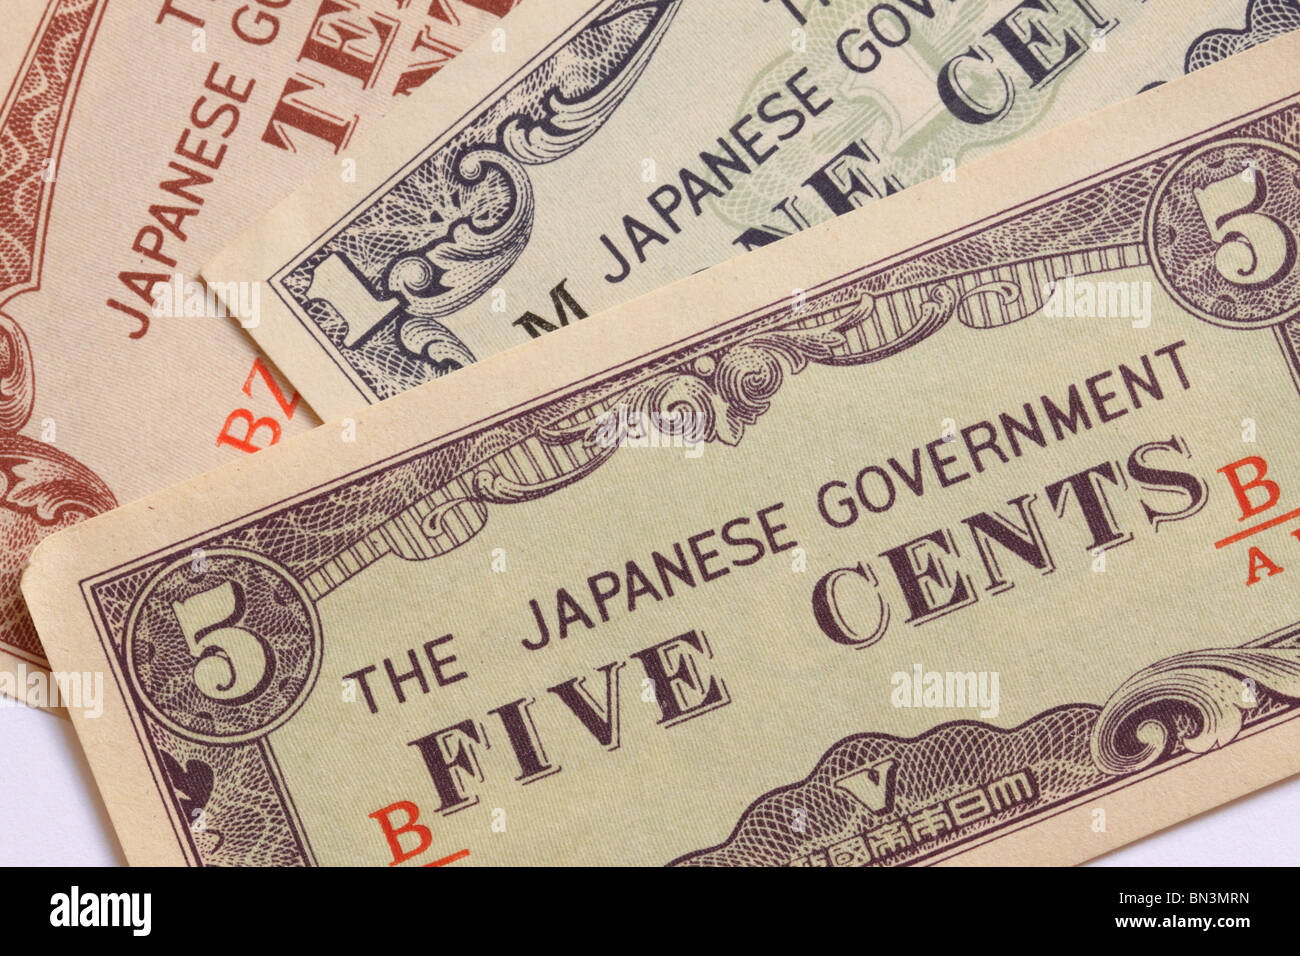 Japanische Regierung 5 fünf Cent Cent Dollar Banknote Währung ausgestellt im 2. Weltkrieg besetzten Südostasiens Stockfoto